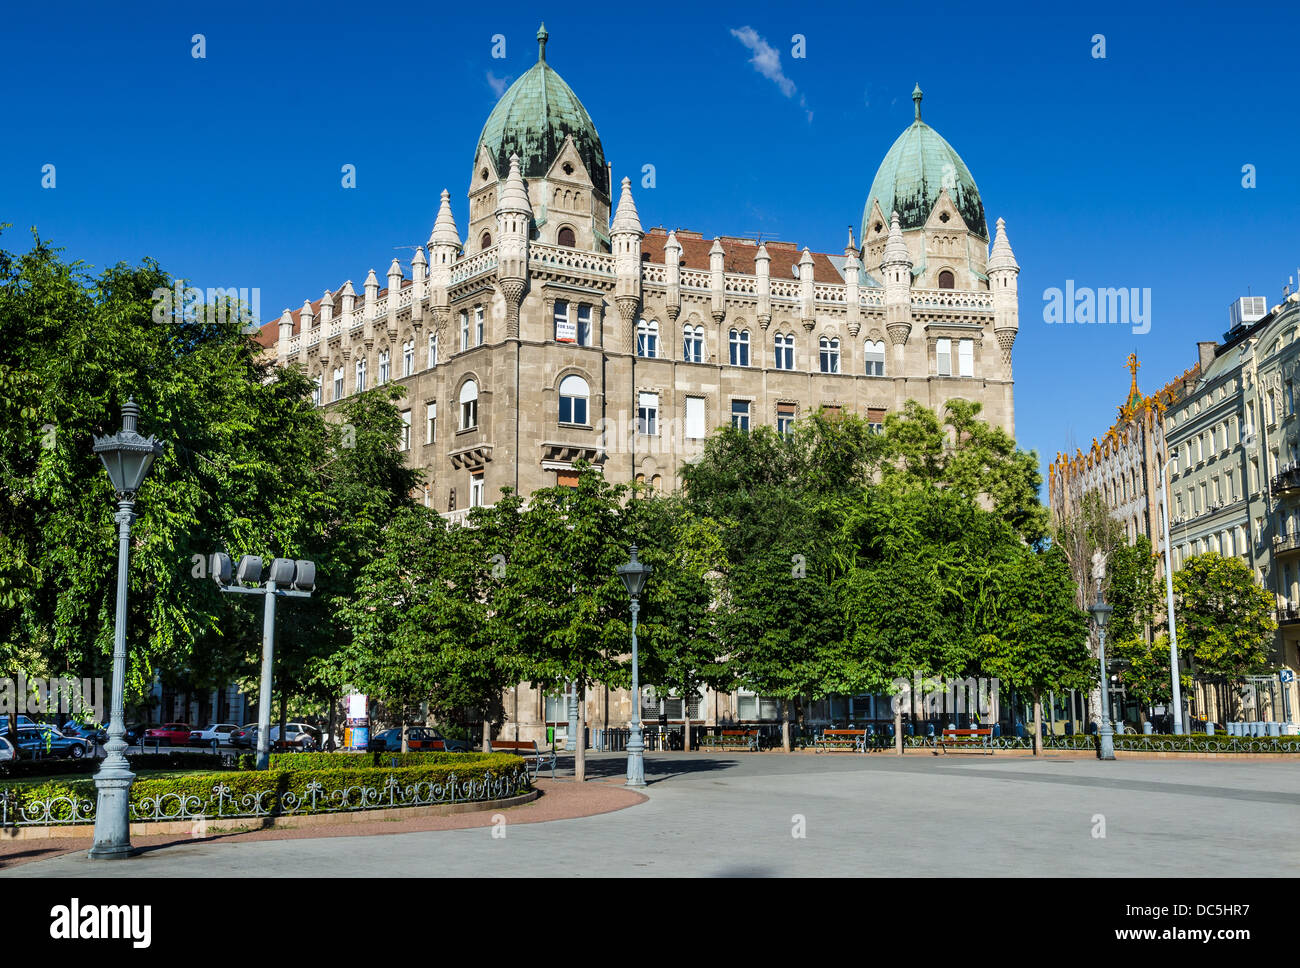 Liberty Square (im ungarischen Szabadsag ter) ist ein öffentlicher Platz befindet sich in Budapest, Ungarn. Stockfoto